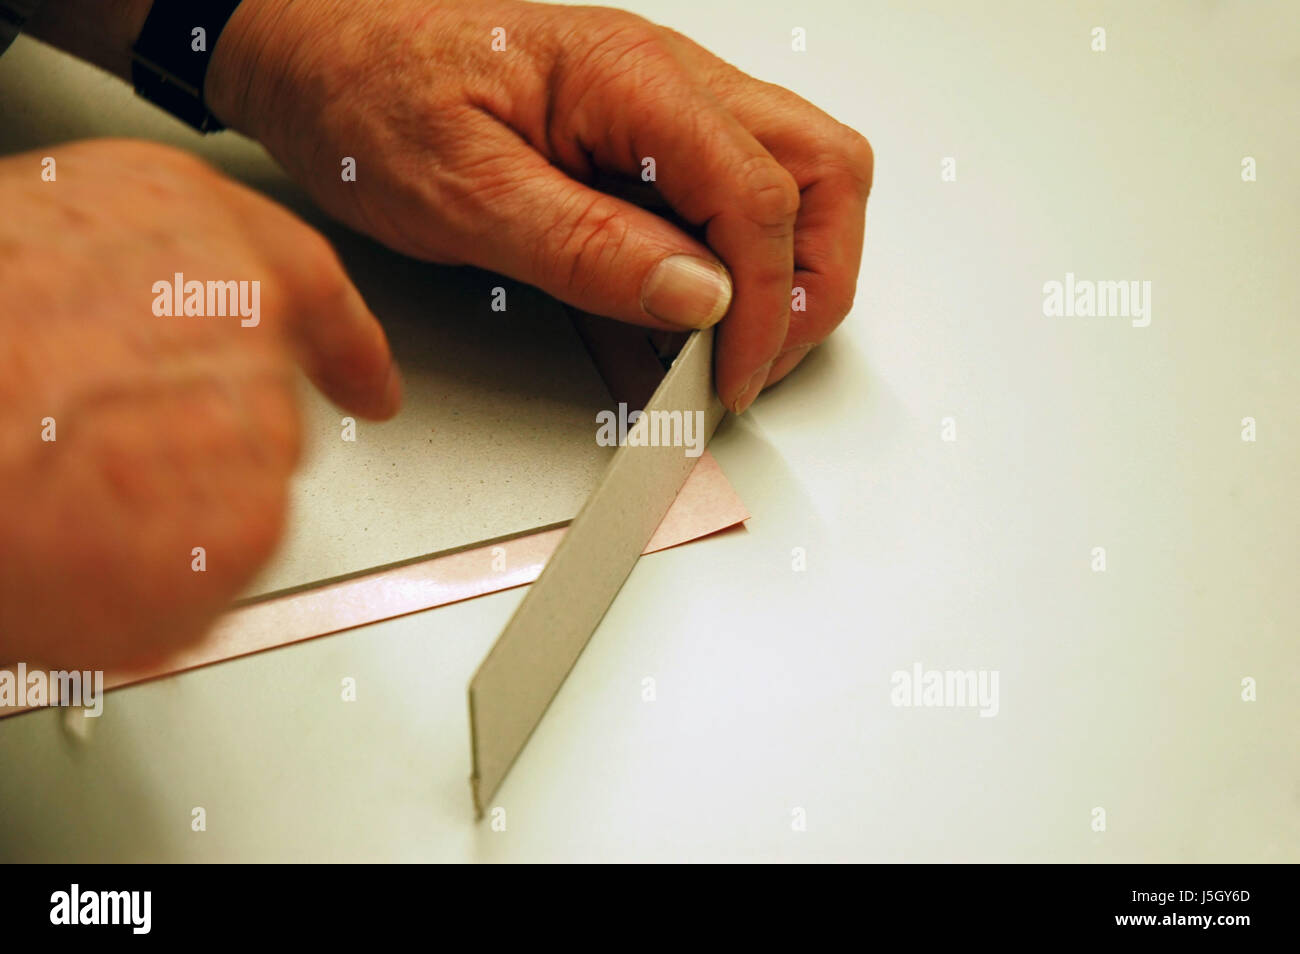 anzuzeigen Sie, dass Show Hand Hände Finger Bind Schnitt zeichnen basteln Katalog kreativen tun Stockfoto